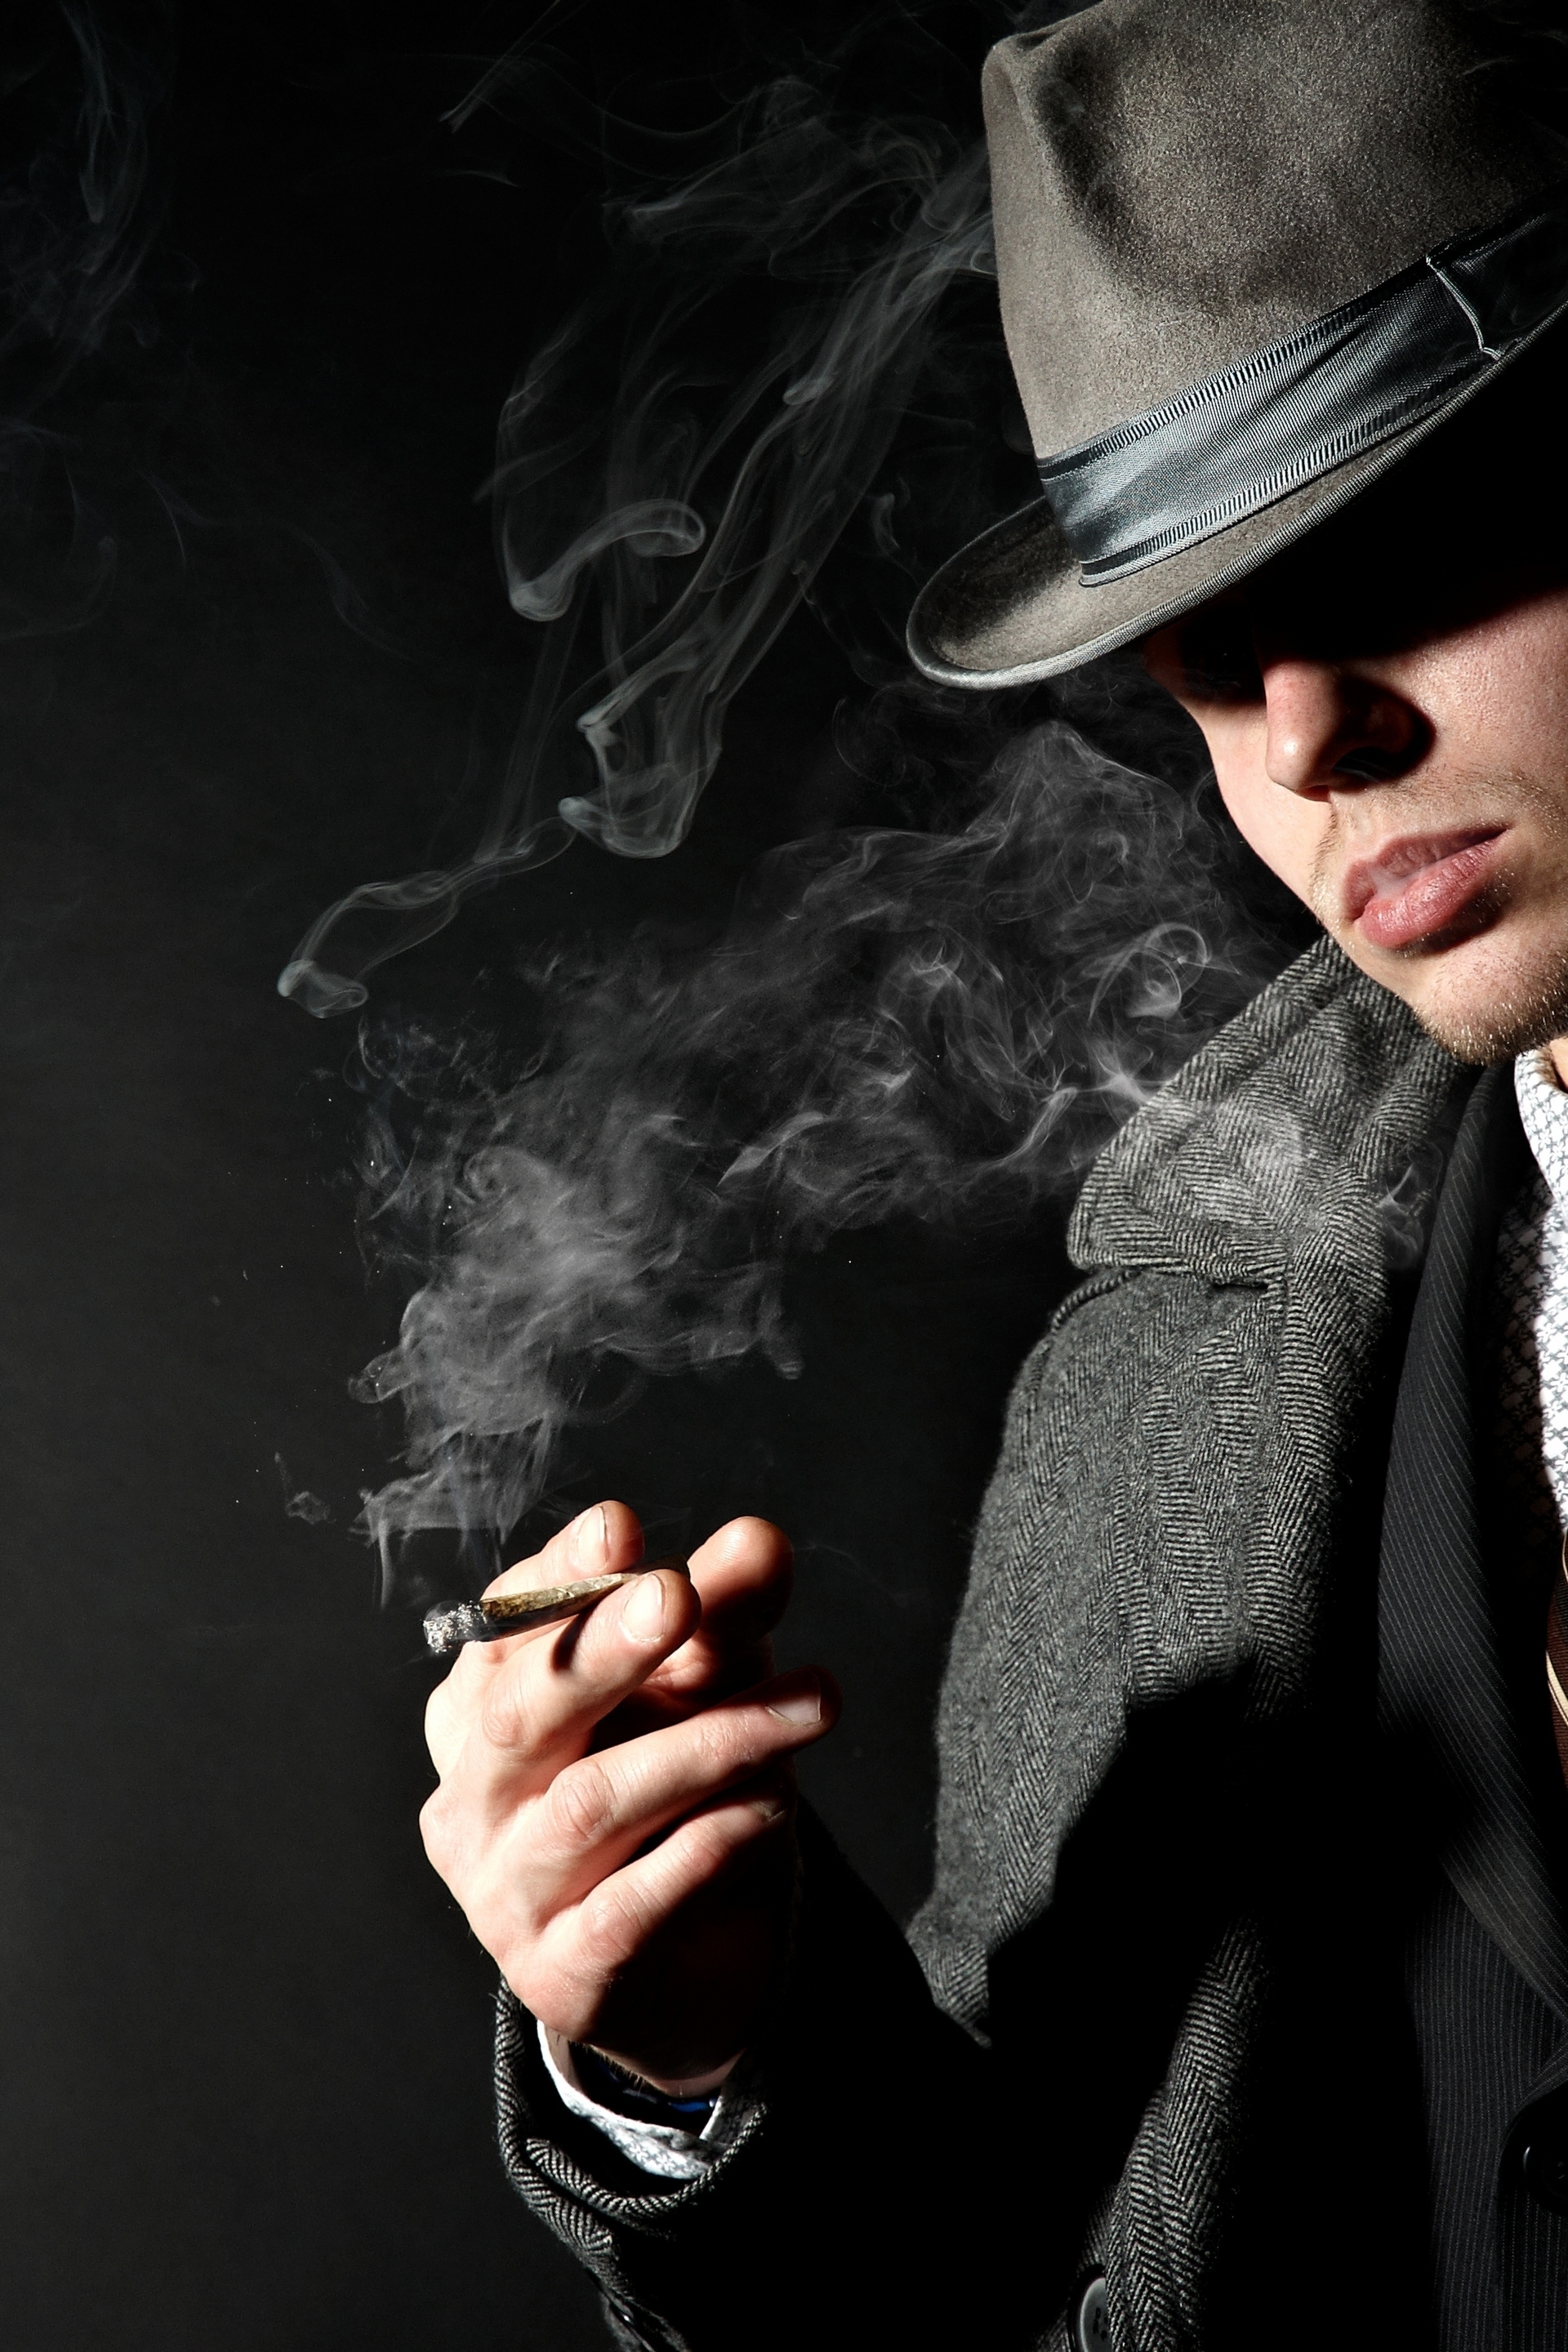 Картинки для ватсапа красивые для мужчины. Курящий в шляпе. Мужчина в шляпе. Мужчина с сигарой. Мужчина в шляпе с сигаретой.